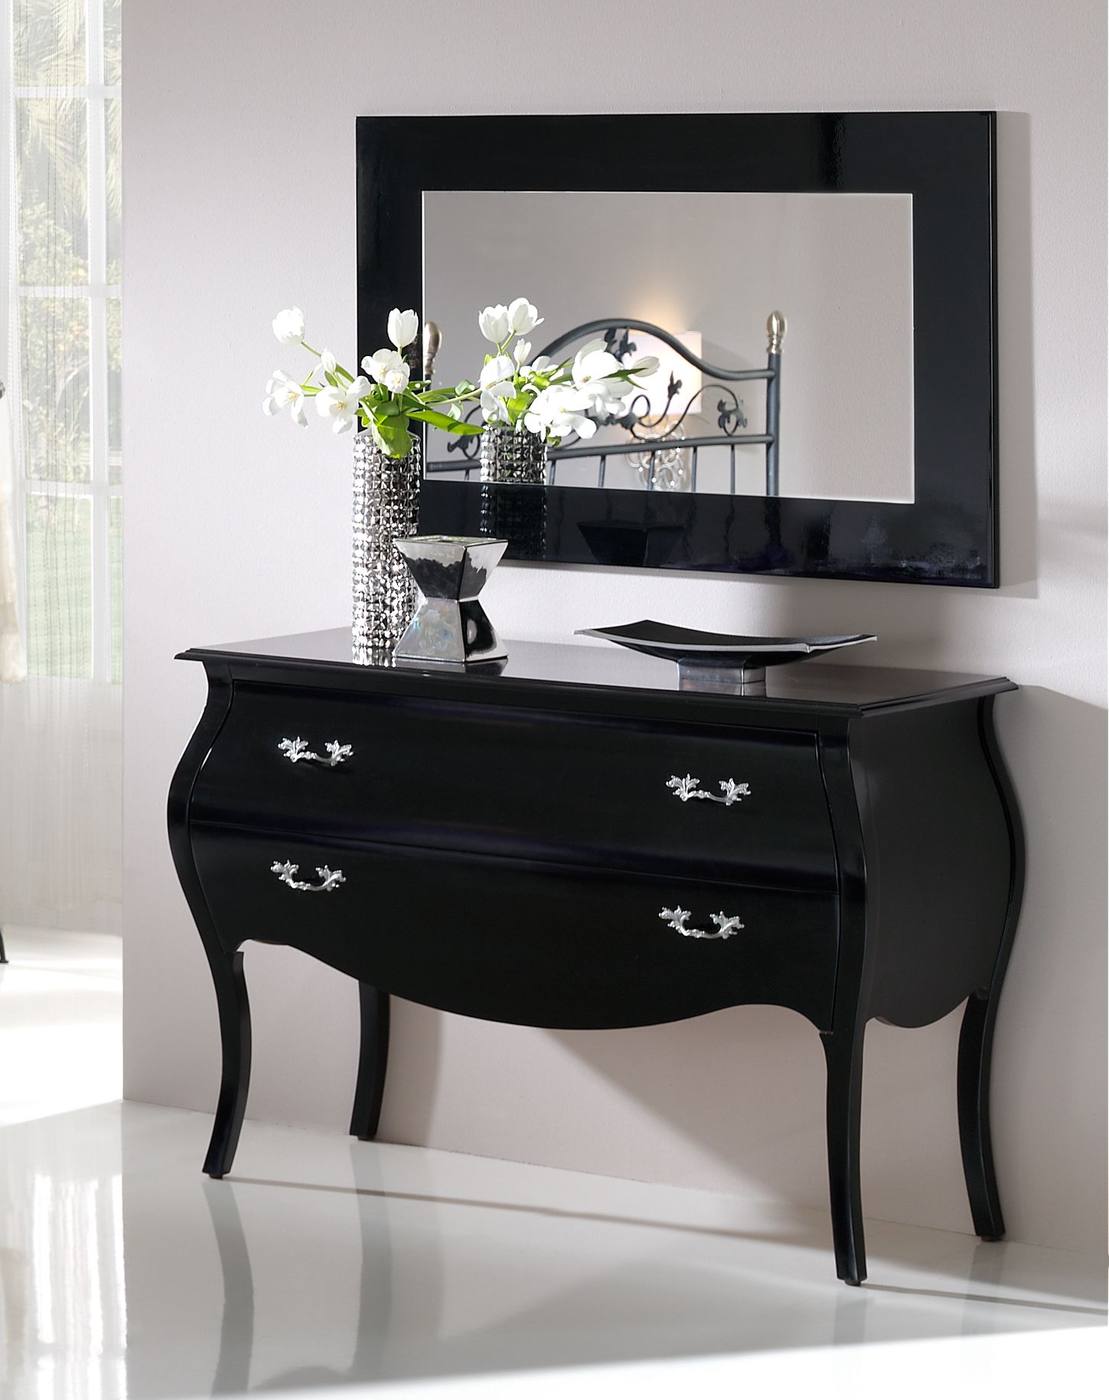 Espejo Negro LD E-96 - Espejo rectangular, con marco lacado en color negro brillo